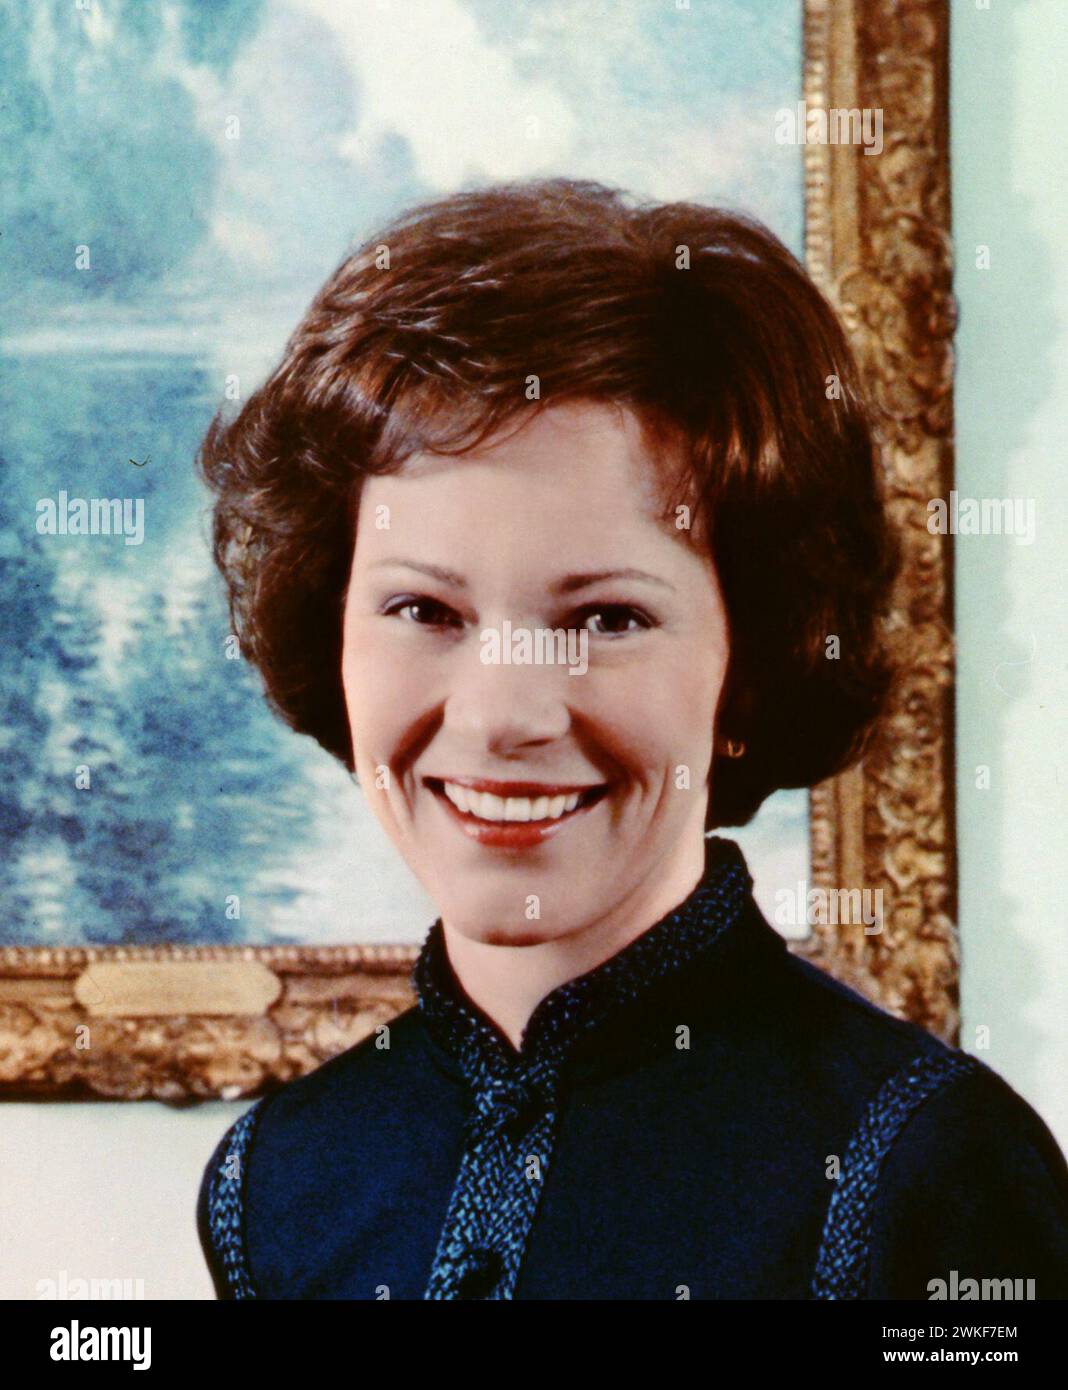 Rosalynn carter. Portrait de la première dame des États-Unis comme épouse du président Jimmy carter, Eleanor Rosalynn carter (1927-2023) en 1977 Banque D'Images